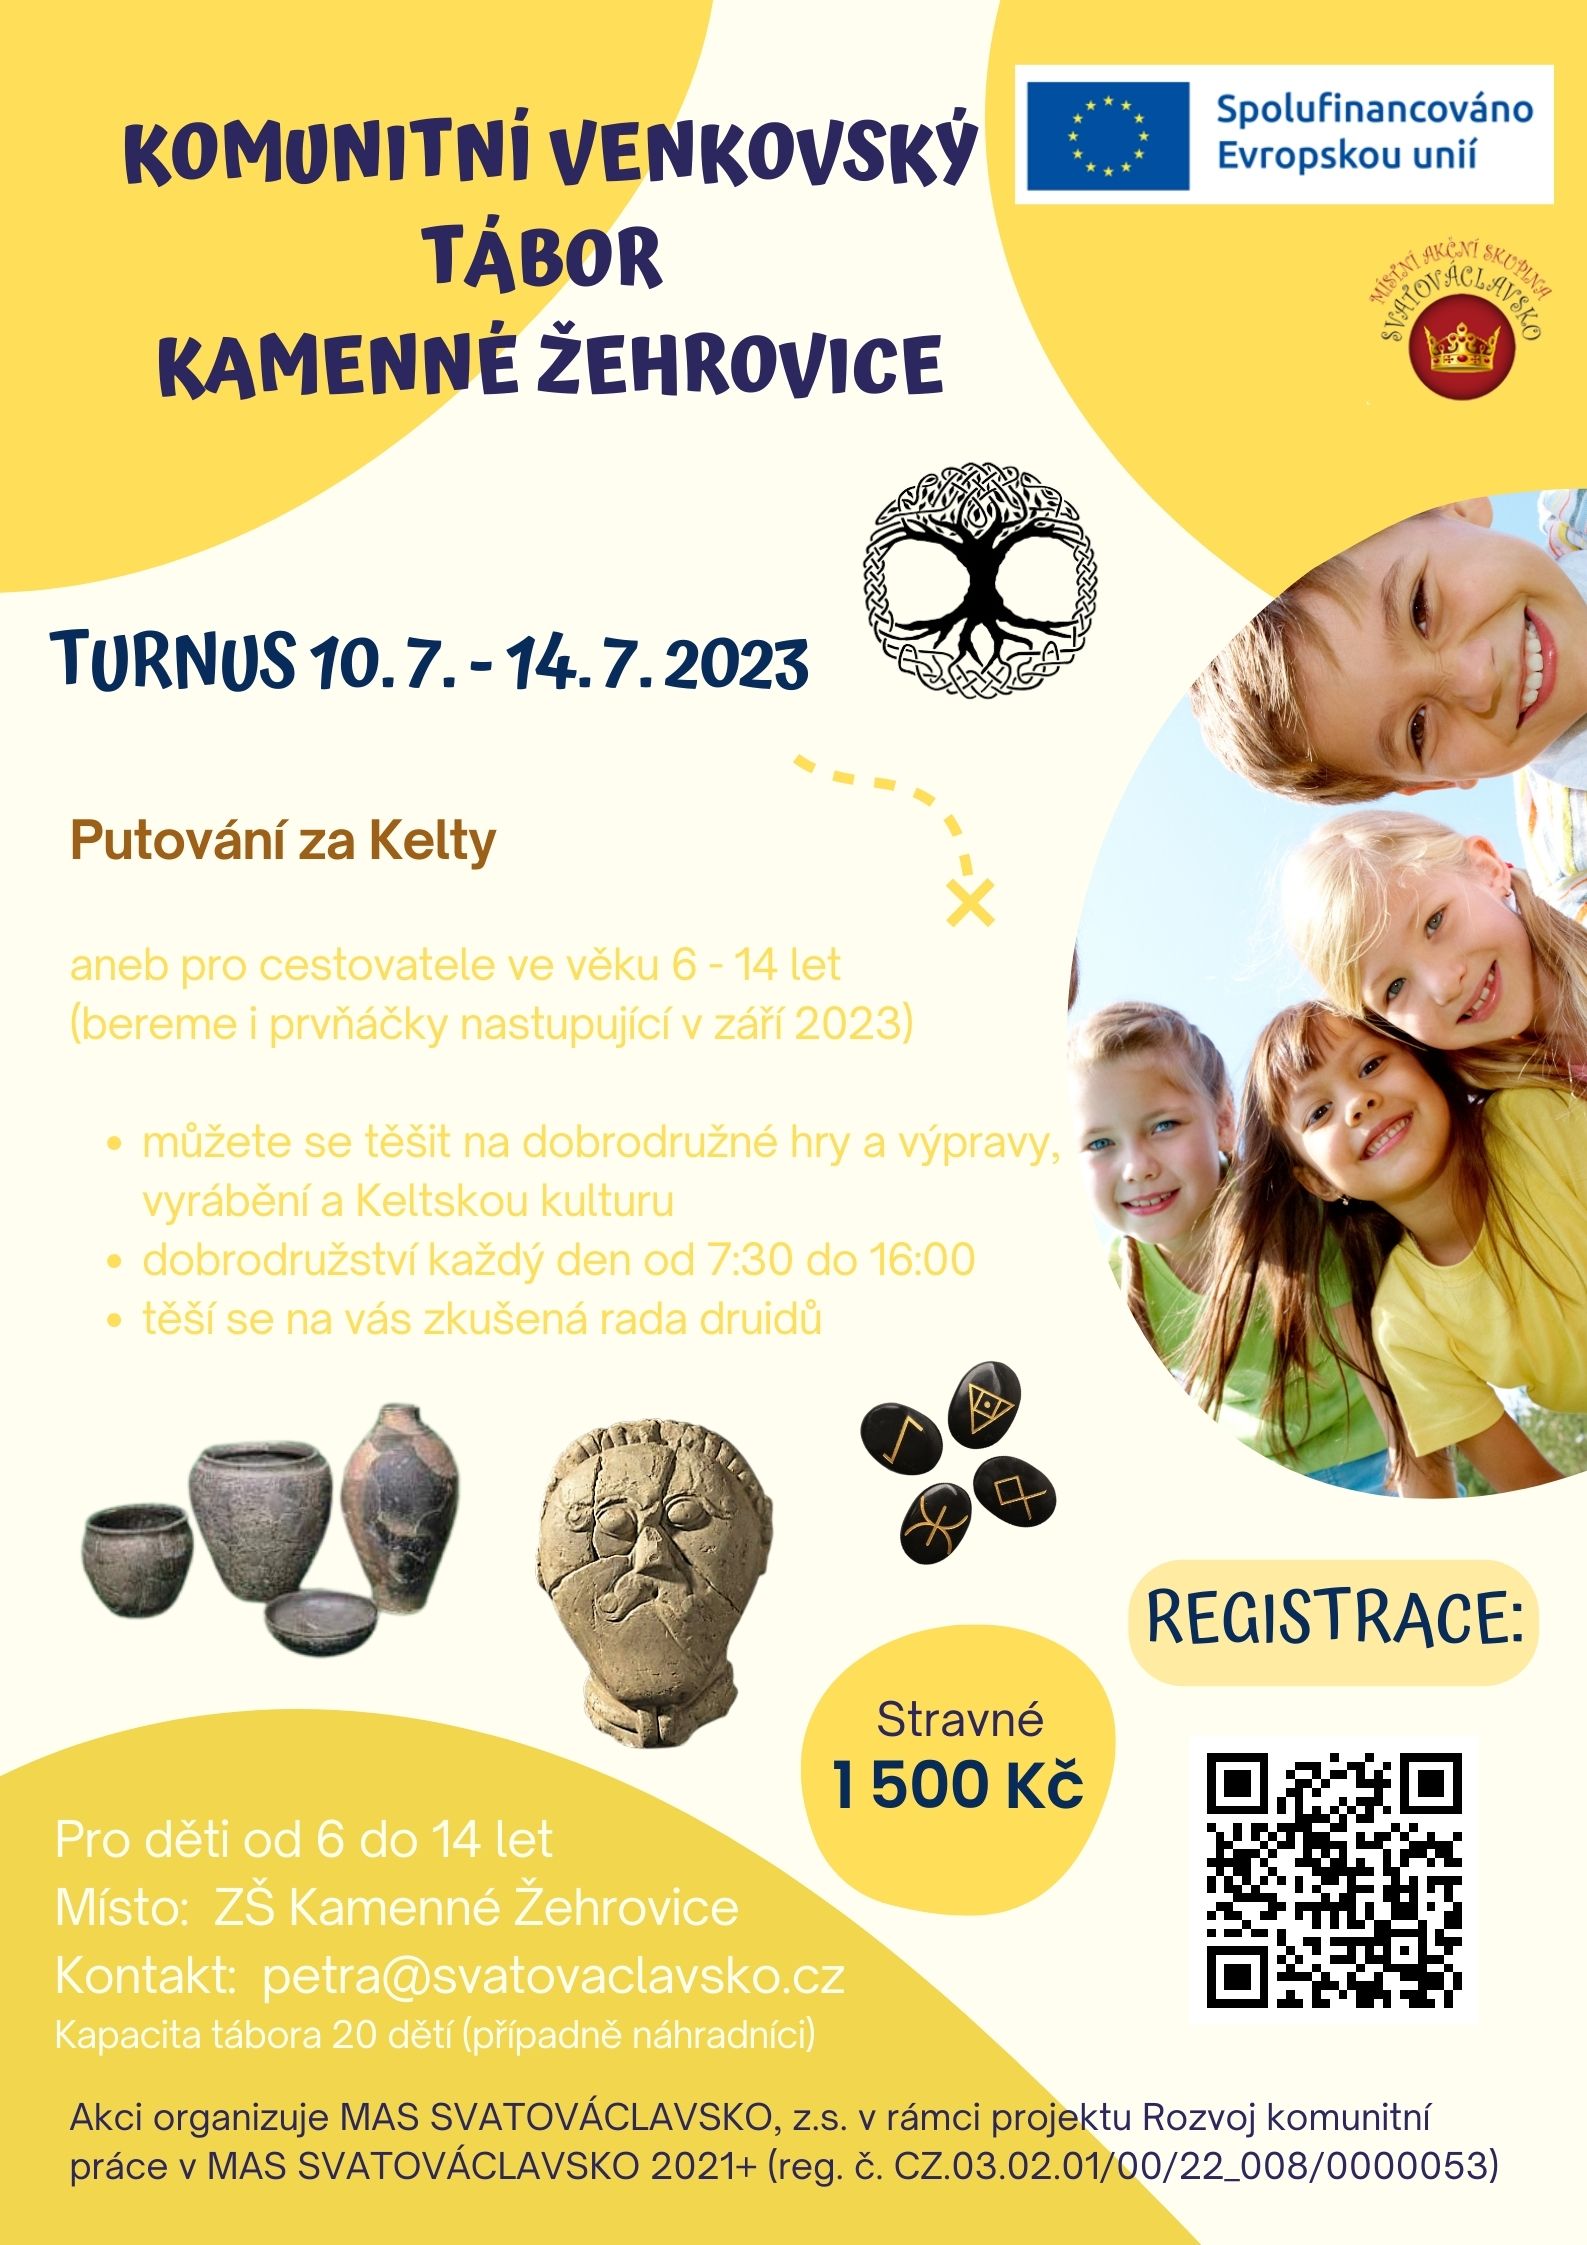 KVT Kamenné Žehrovice